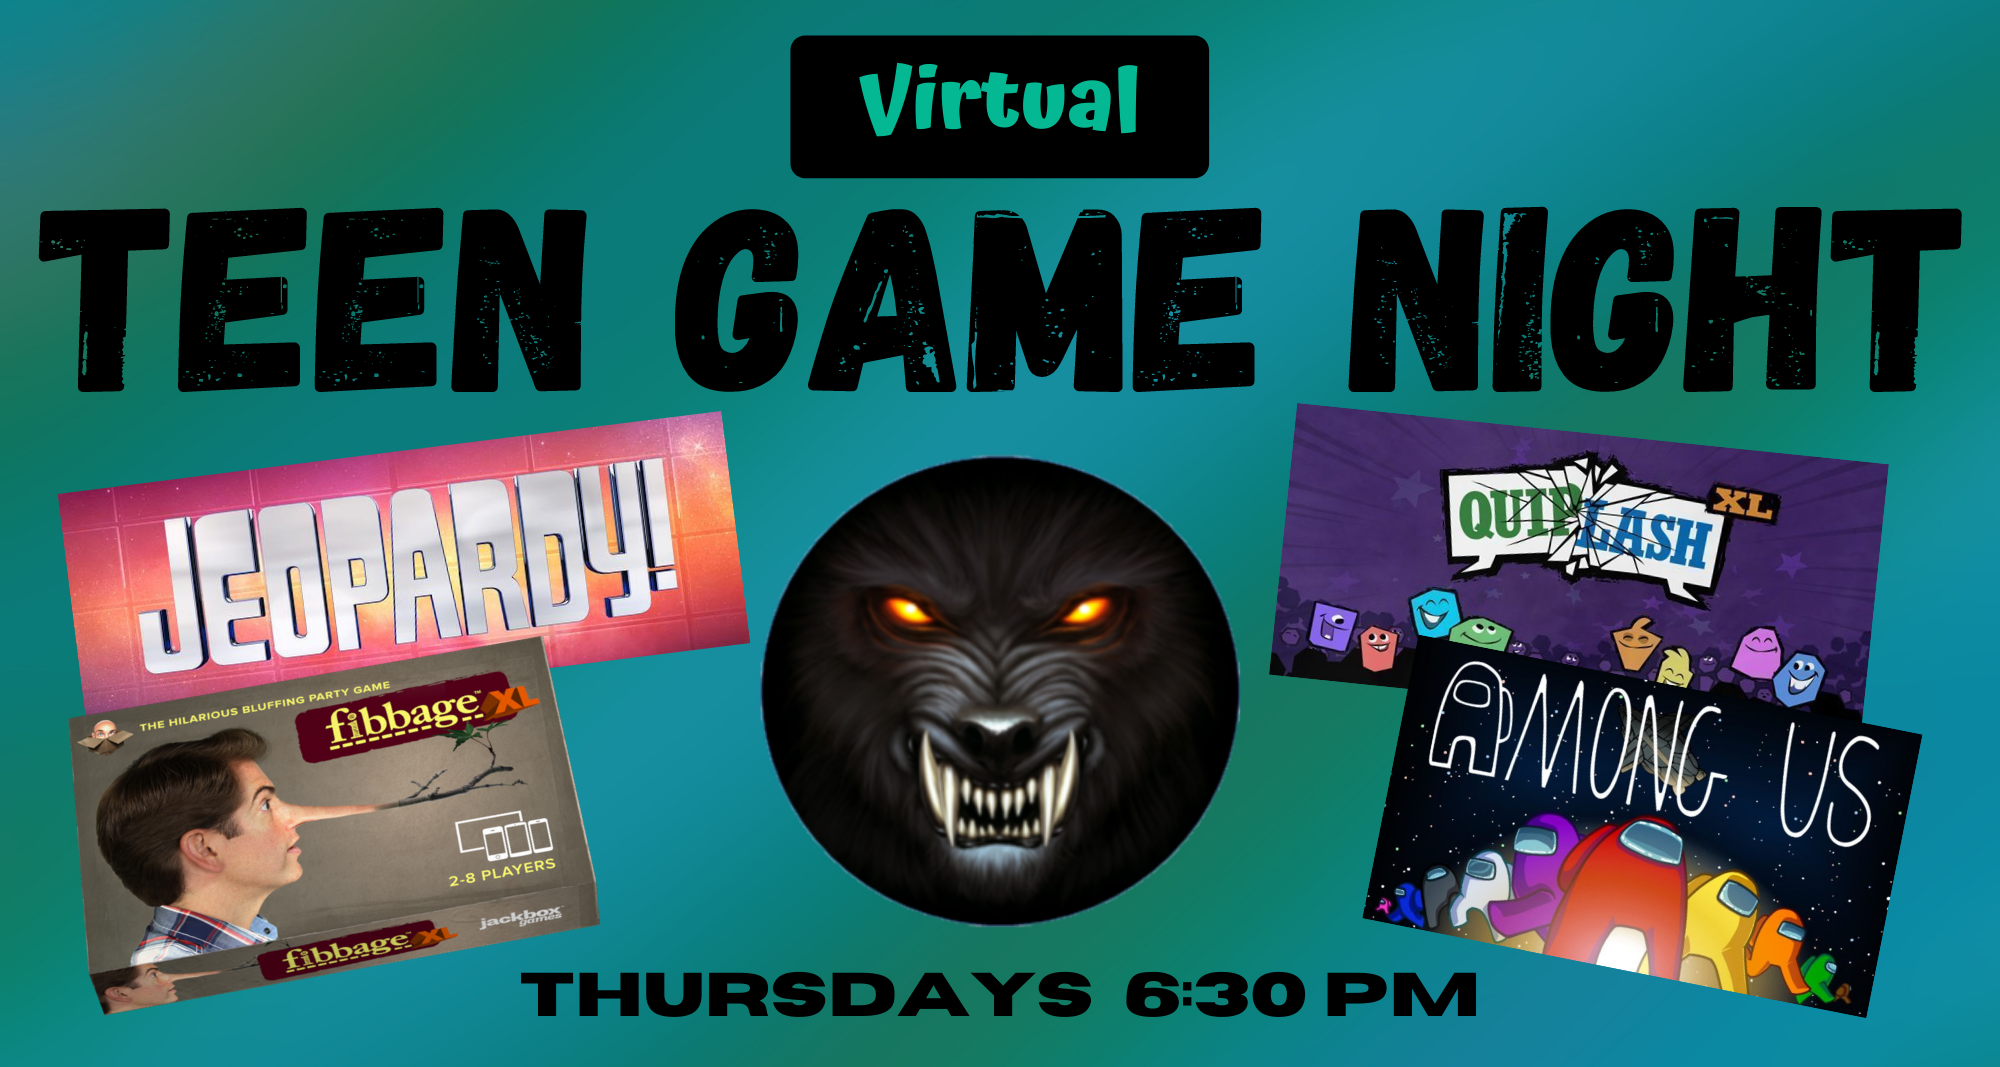 Virtual Teen Game Night